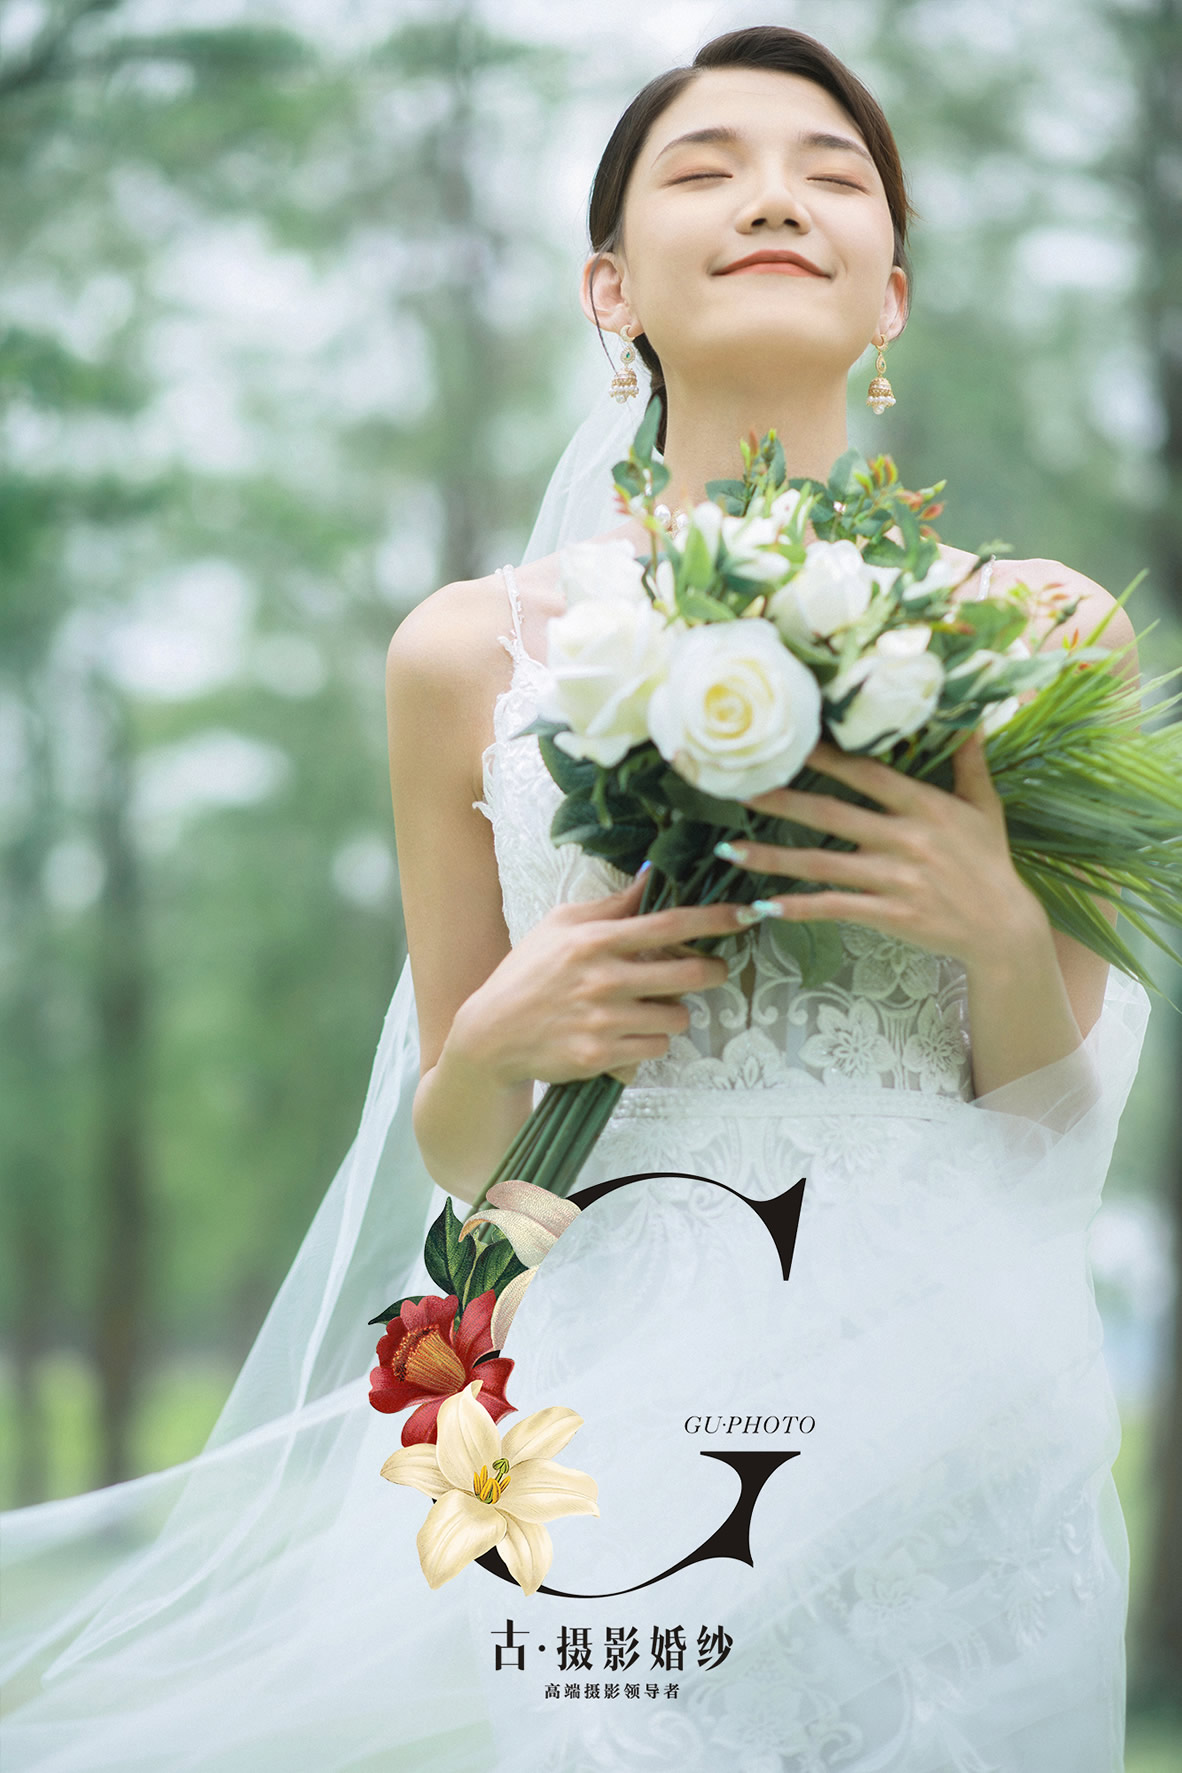 麋鹿森林《安纳西的夏天》 - 拍摄地 - 广州婚纱摄影-广州古摄影官网